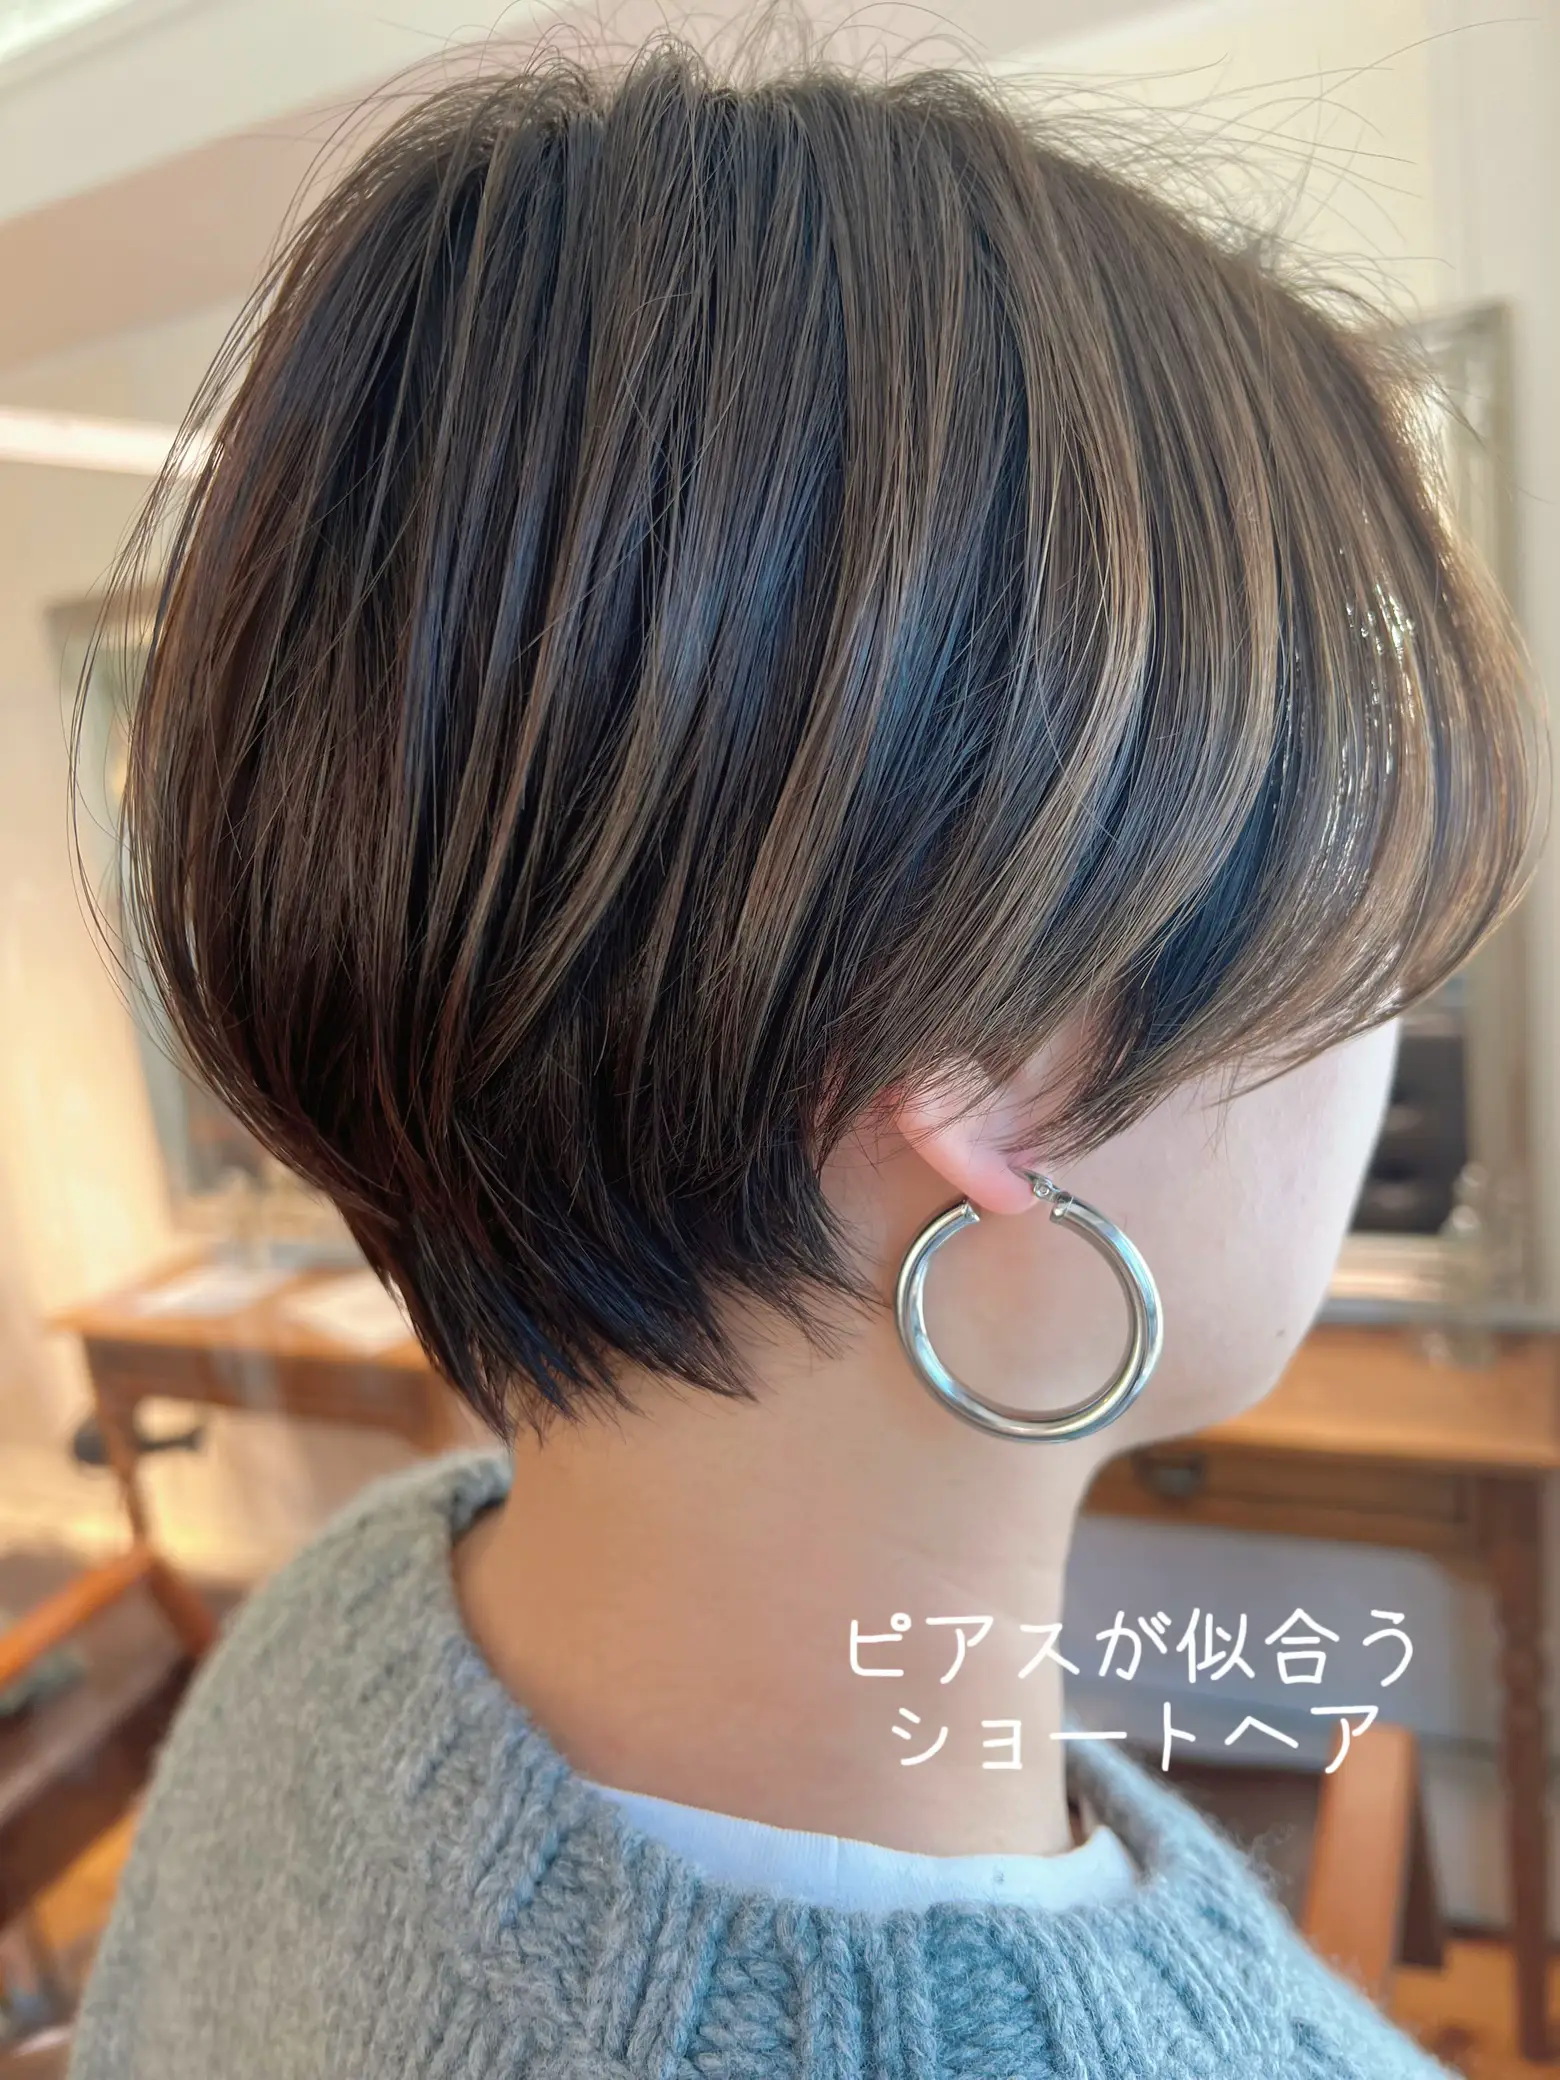 ピアスが似合うショートヘア | ケンタの髪質改善と髪情報が投稿したフォトブック | Lemon8